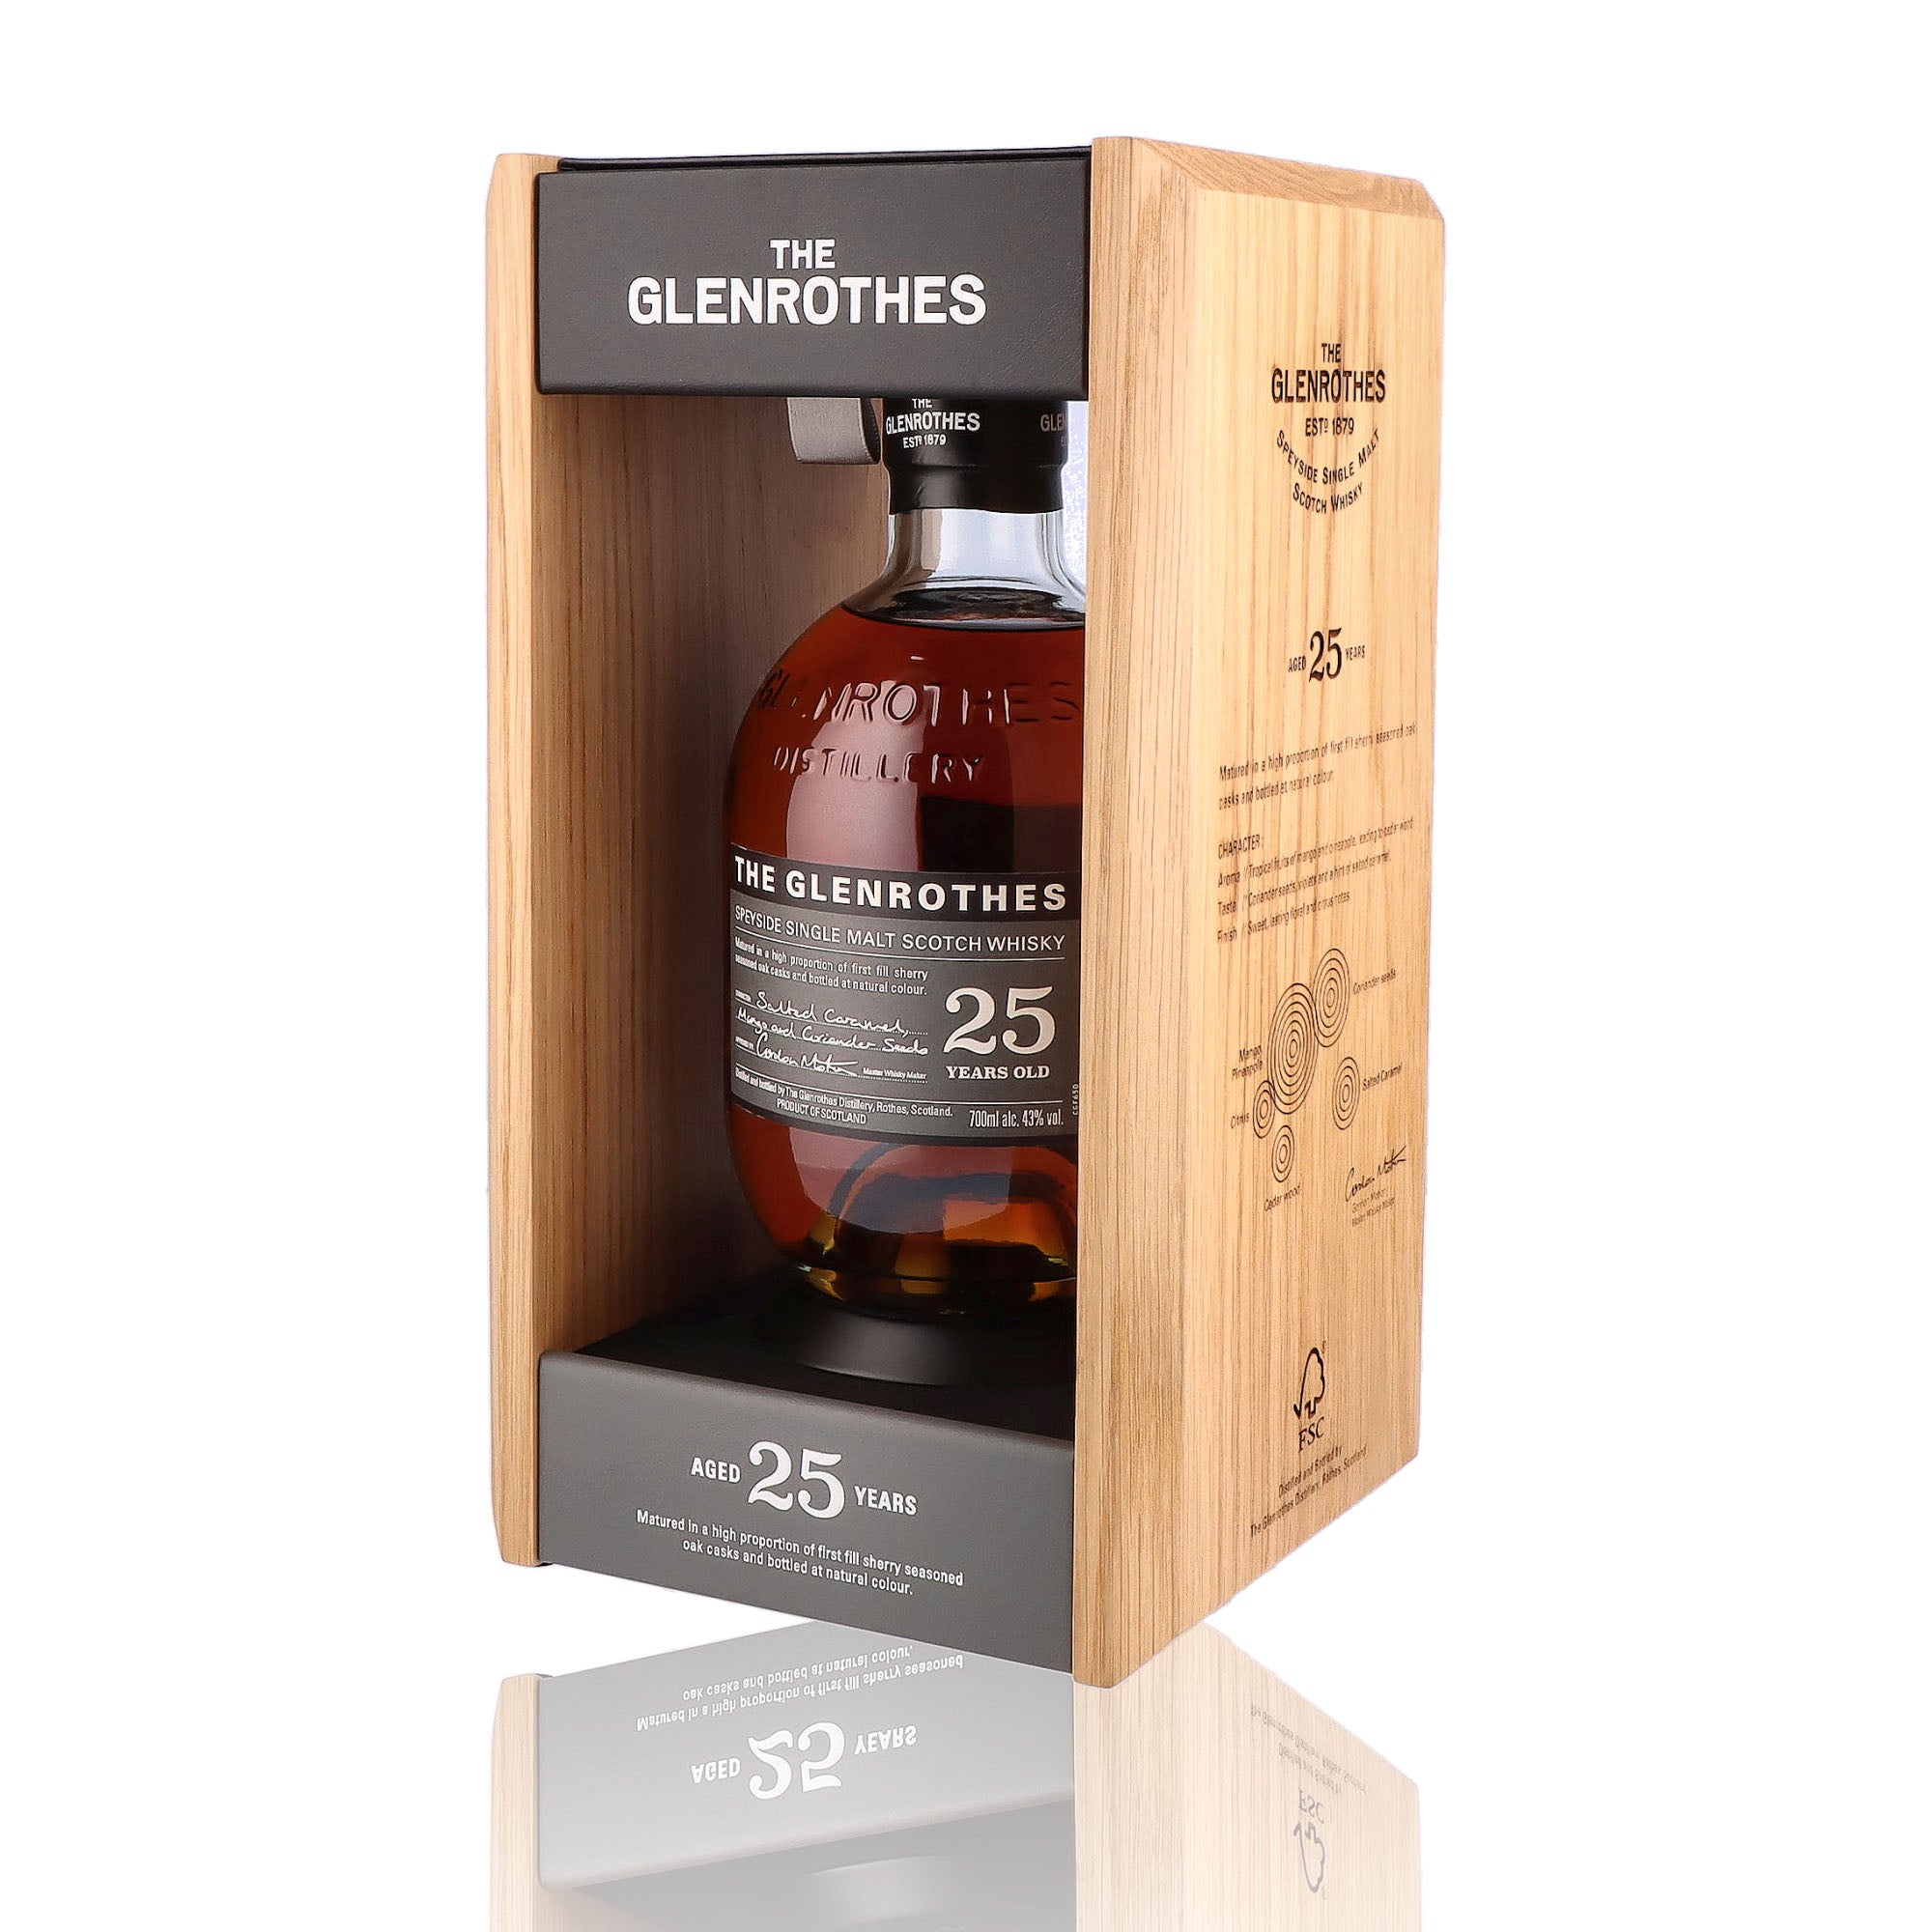 Une bouteille de Scotch Whisky Single Malt de la marque Glenrothes, 25 ans d'âge